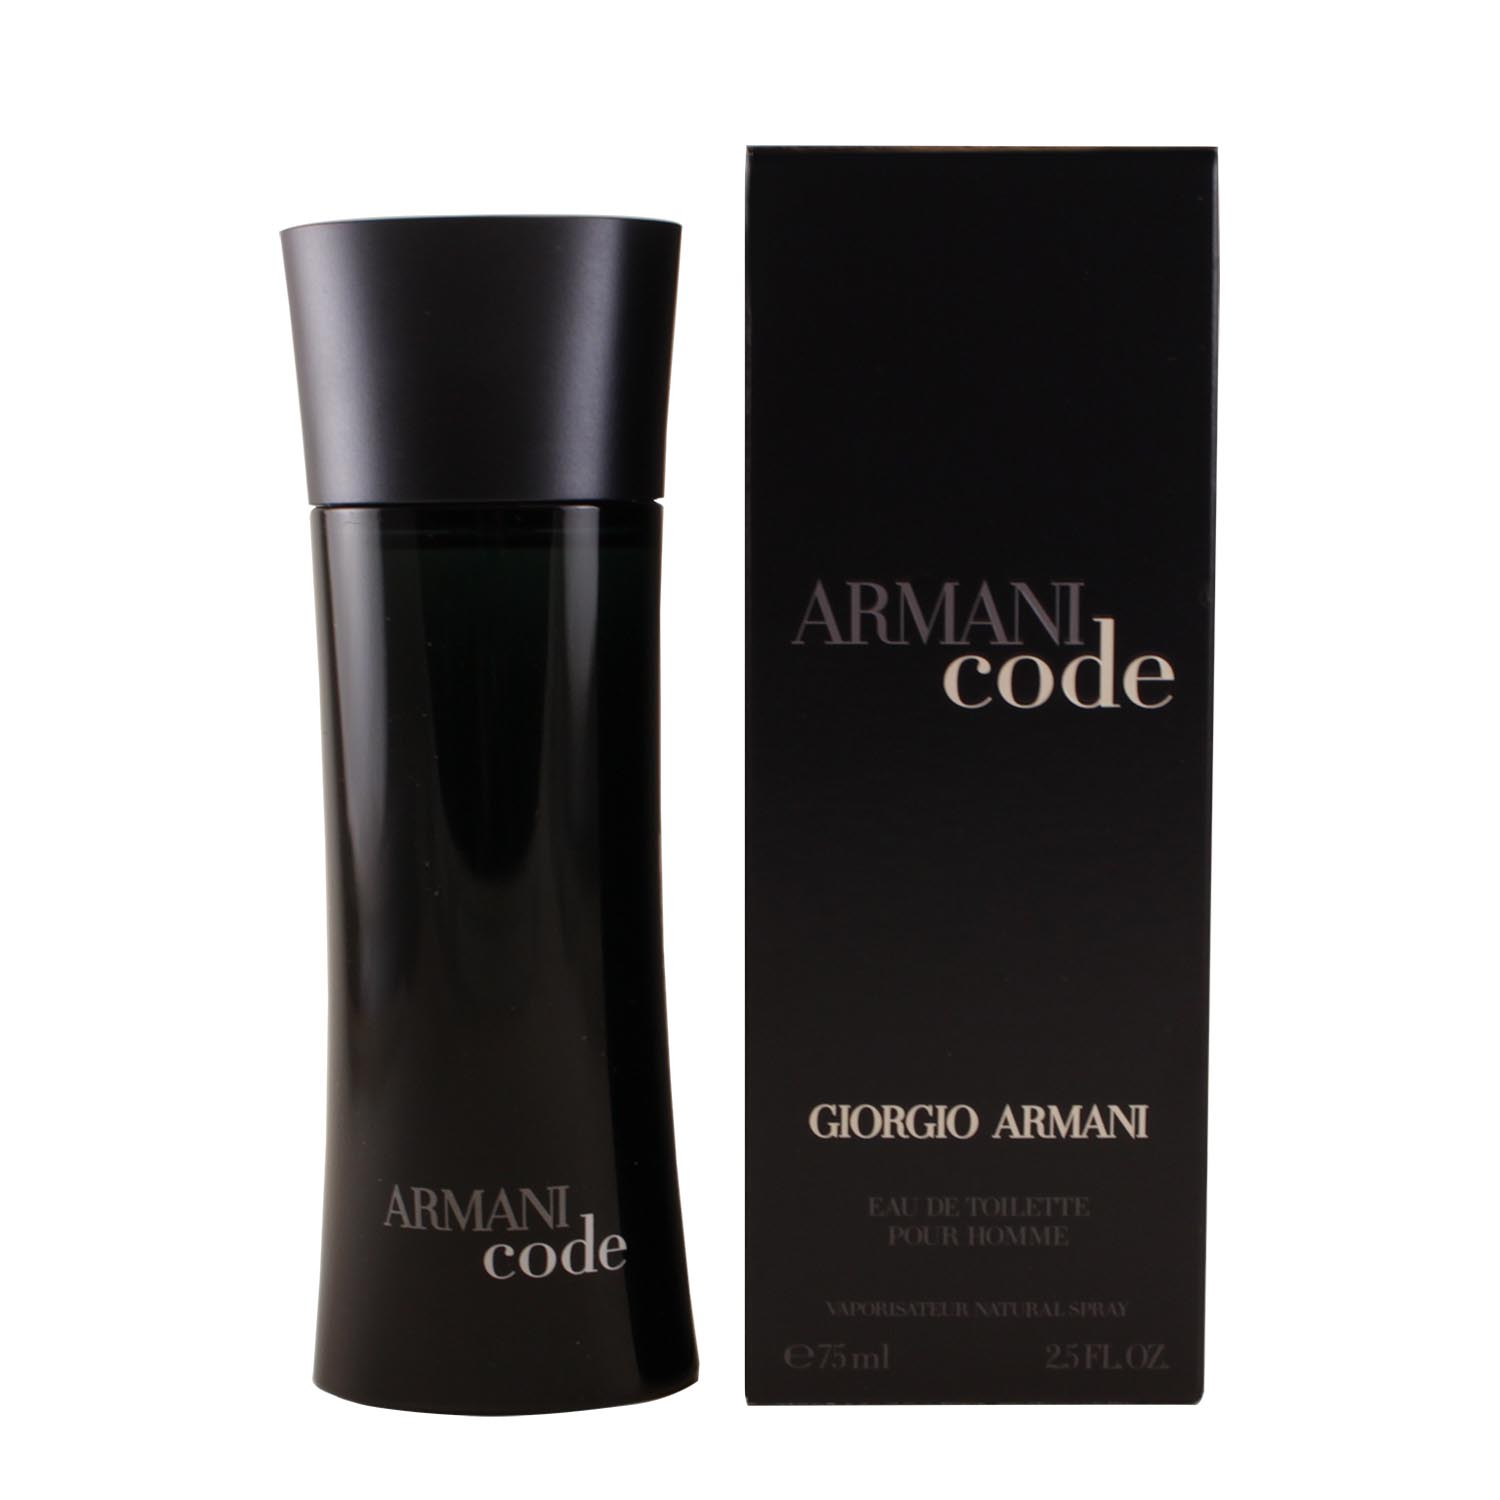 Giorgio Armani Code Cologne : Armani Code Men S Fragrance Giorgio ...